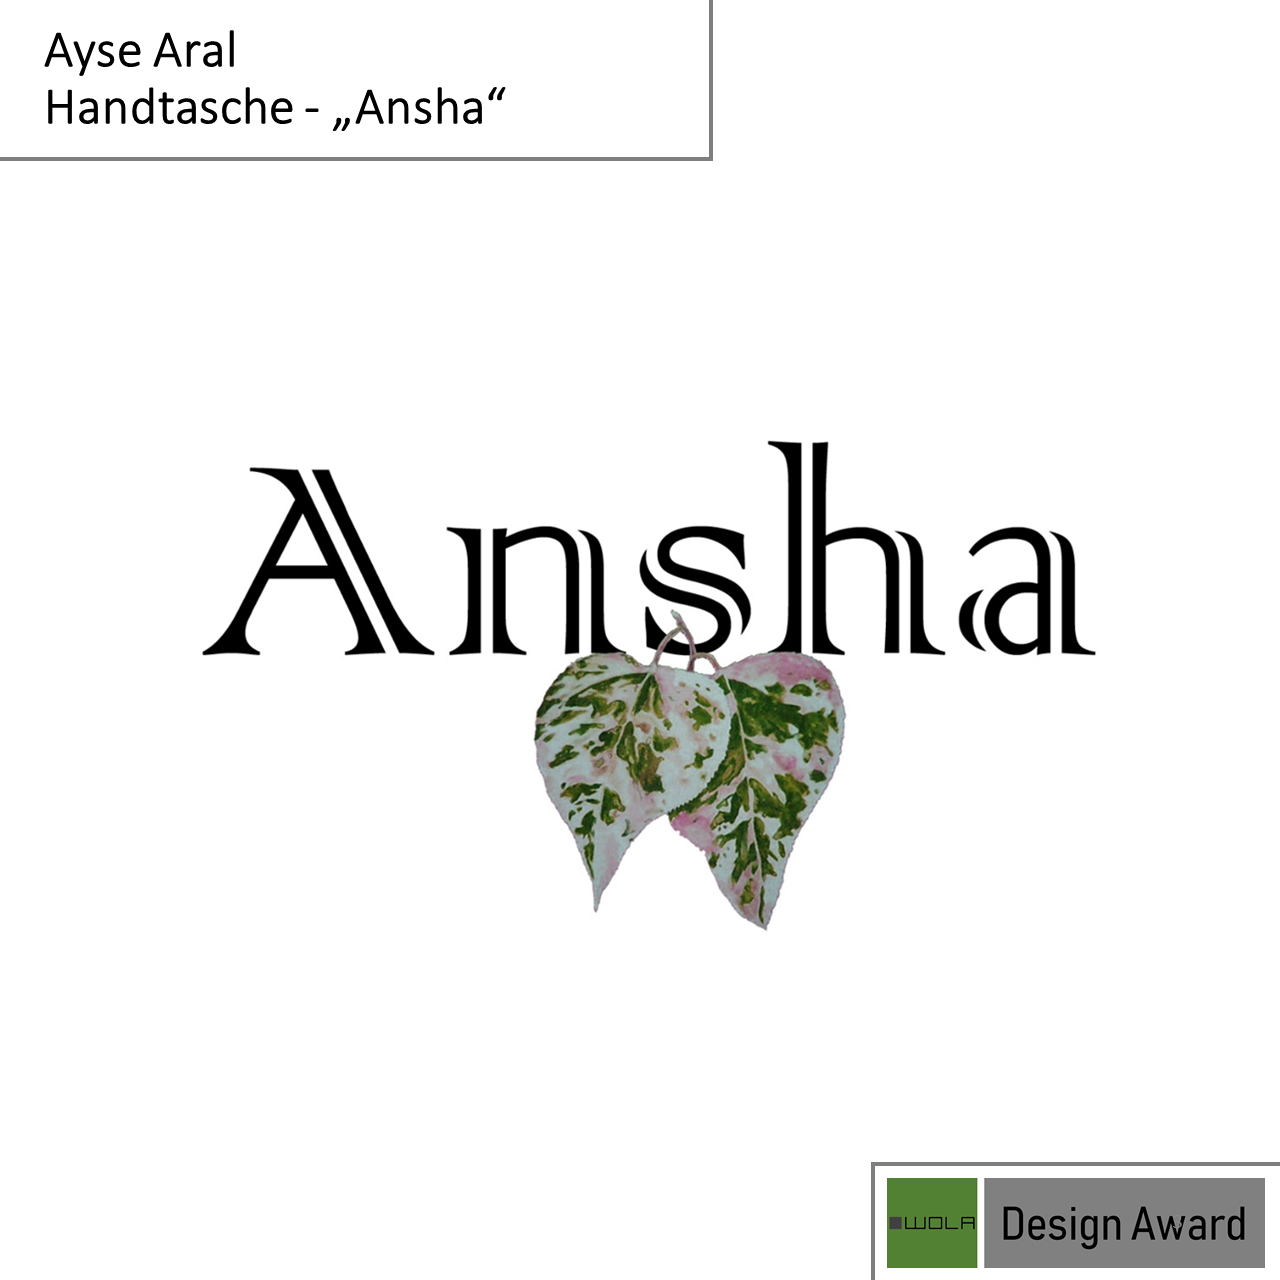 AYSE ARAL - Tasche "Ansha Yisilim 2"3